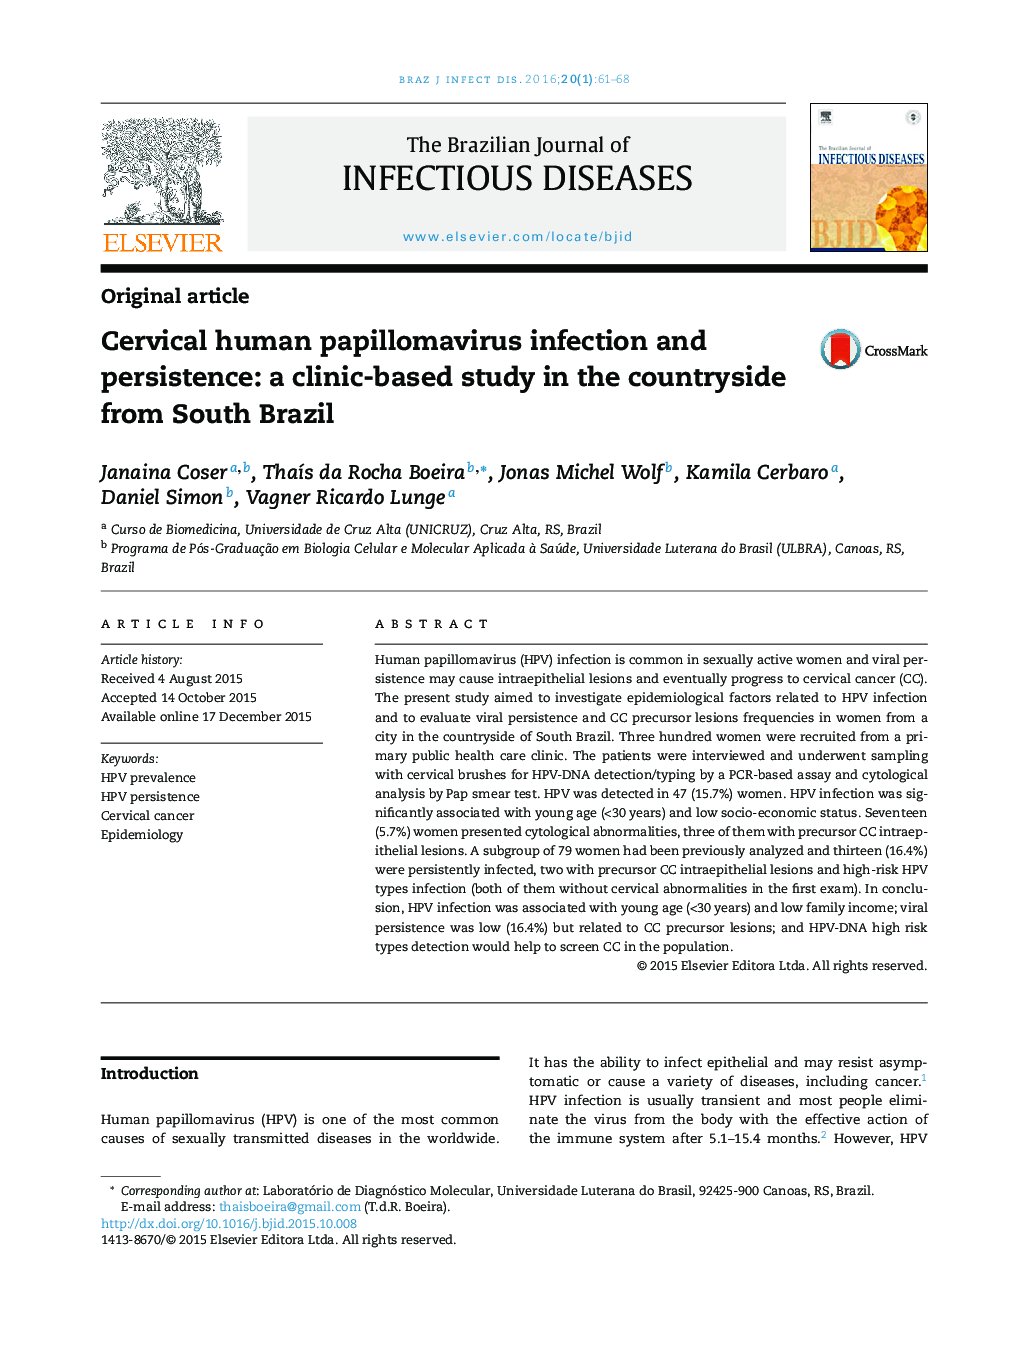 عفونت و باقی ماندن ویروس پاپیلومای گردن رحم انسانی: یک مطالعه مبتنی بر کلینیک در حومه شهر برزیل جنوبی  